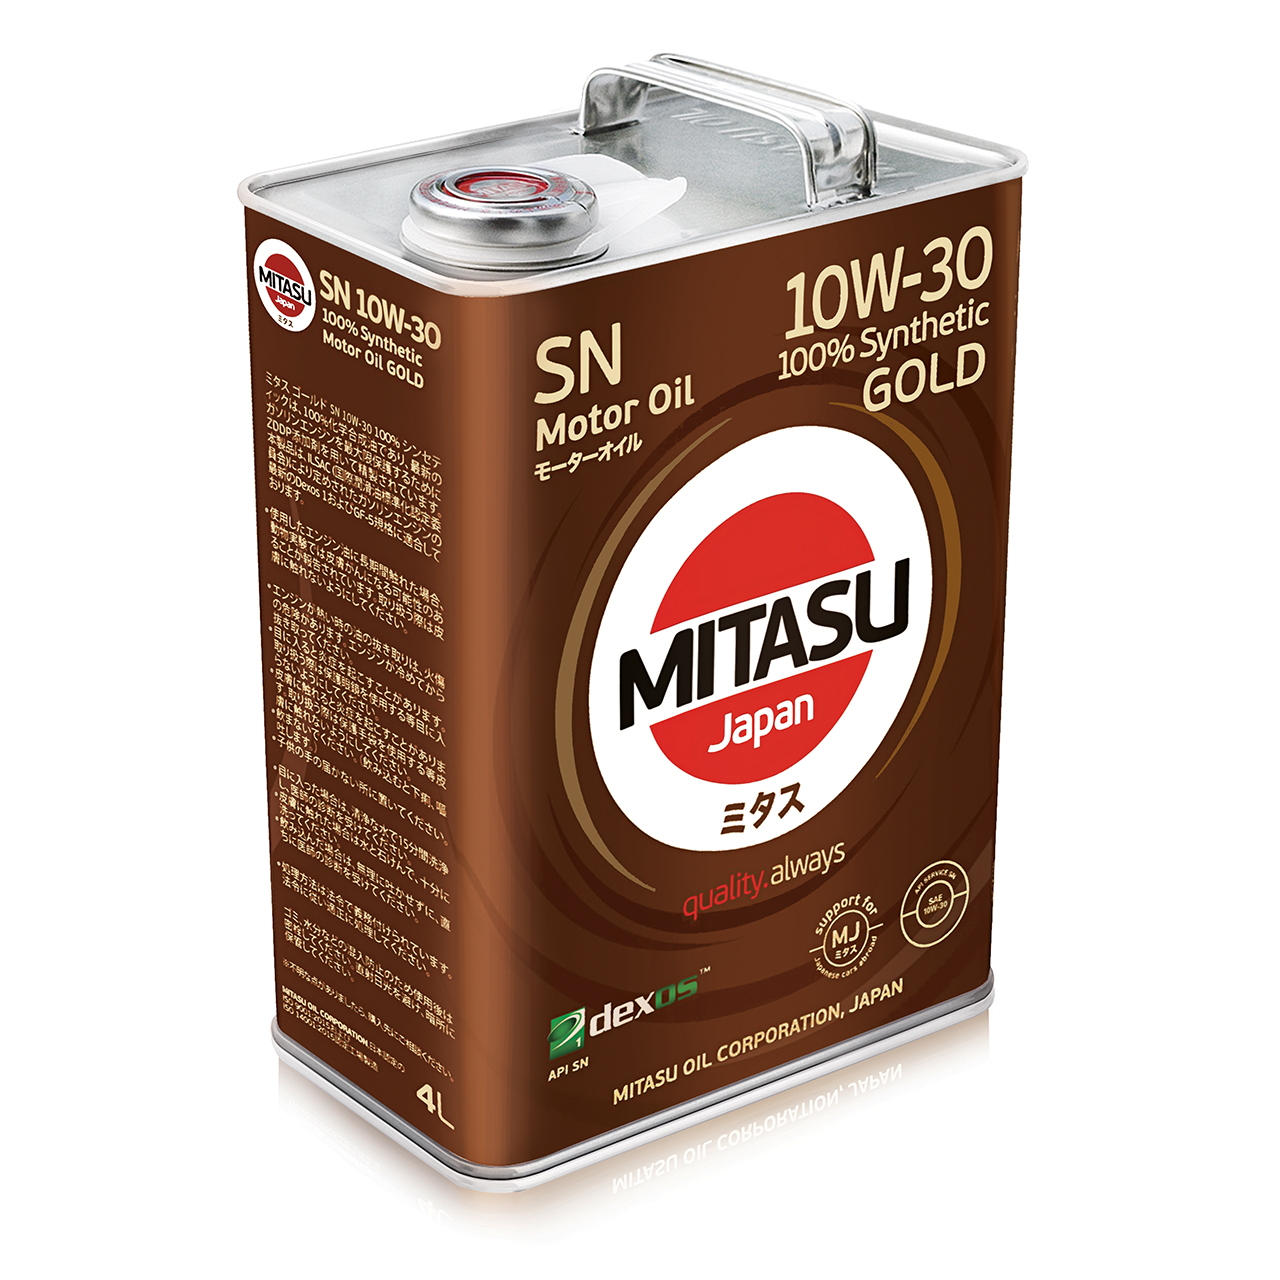 Купить запчасть MITASU - MJ1054 Масло моторное MITASU GOLD SN GF-5 10w30 4л синтетика для бензиновых двигателей MJ105 (1/6) Япония